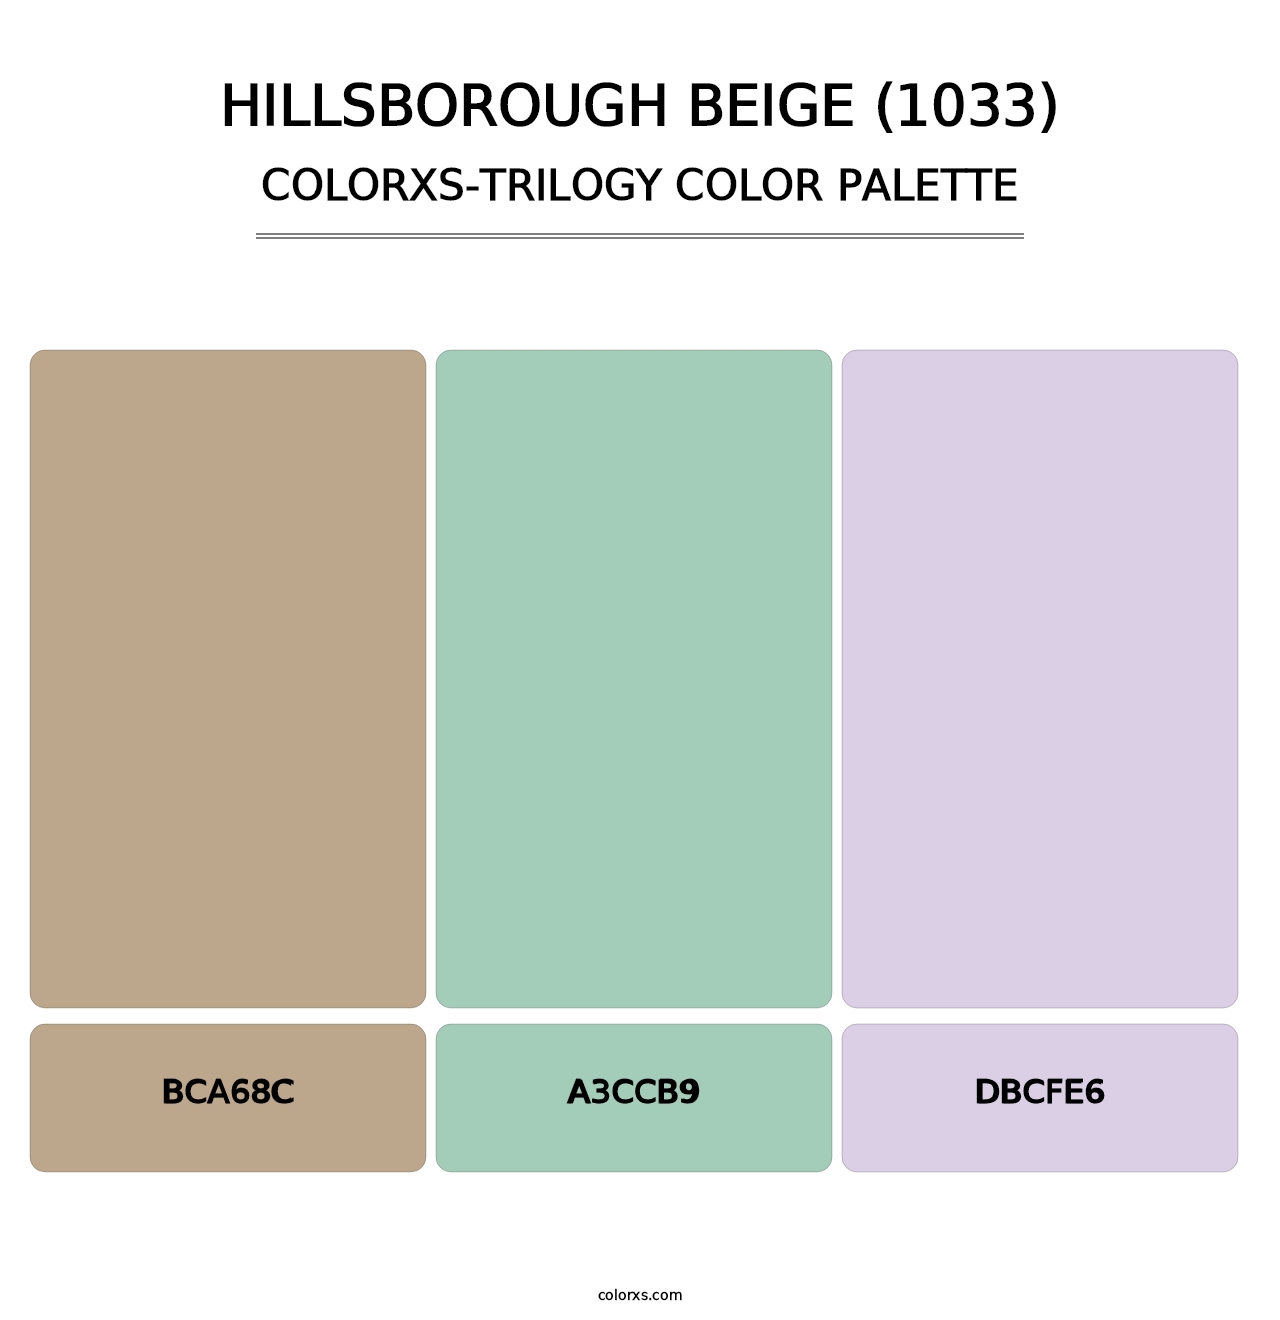 Hillsborough Beige (1033) - Colorxs Trilogy Palette